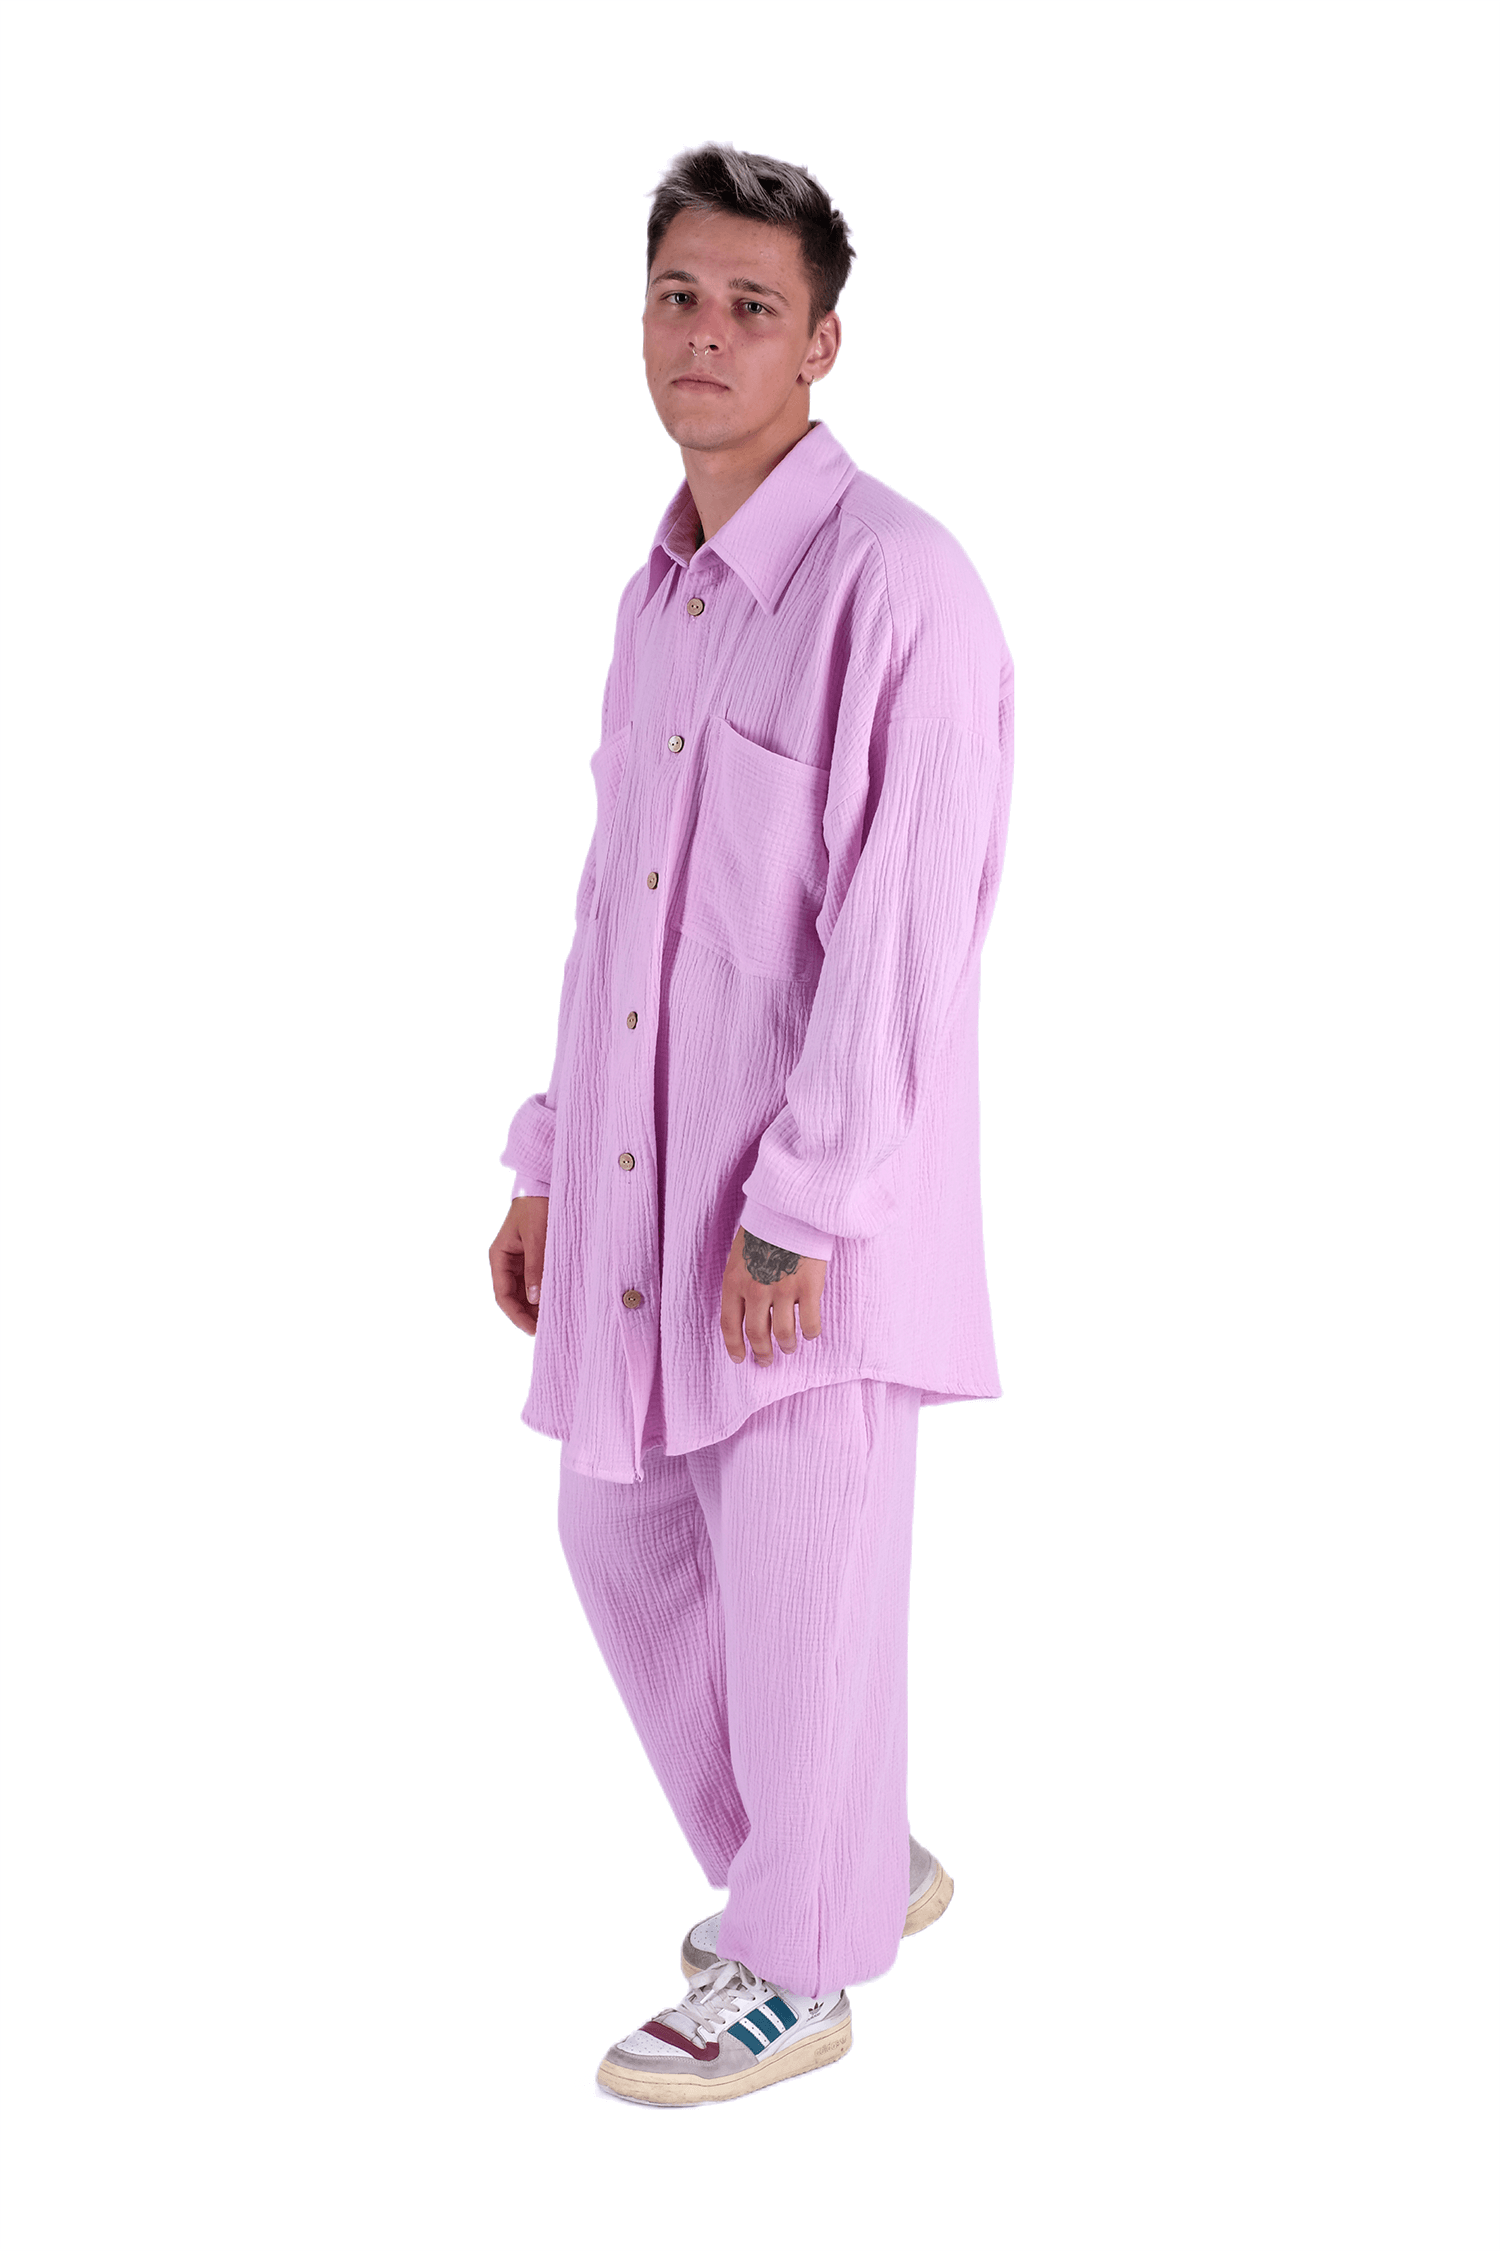 <p>Этот розовый муслиновый летний костюм - это истинное воплощение летней легкости и стиля. Изготовленный из нежного муслина, он обеспечивает максимальный комфорт и свободу движения в жаркие дни. Сочетание яркого розового цвета и легкой ткани создает свежий и веселый образ для жаркого сезона. Этот костюм - идеальный выбор для пляжных прогулок, летних вечеринок и отдыха на природе.</p>